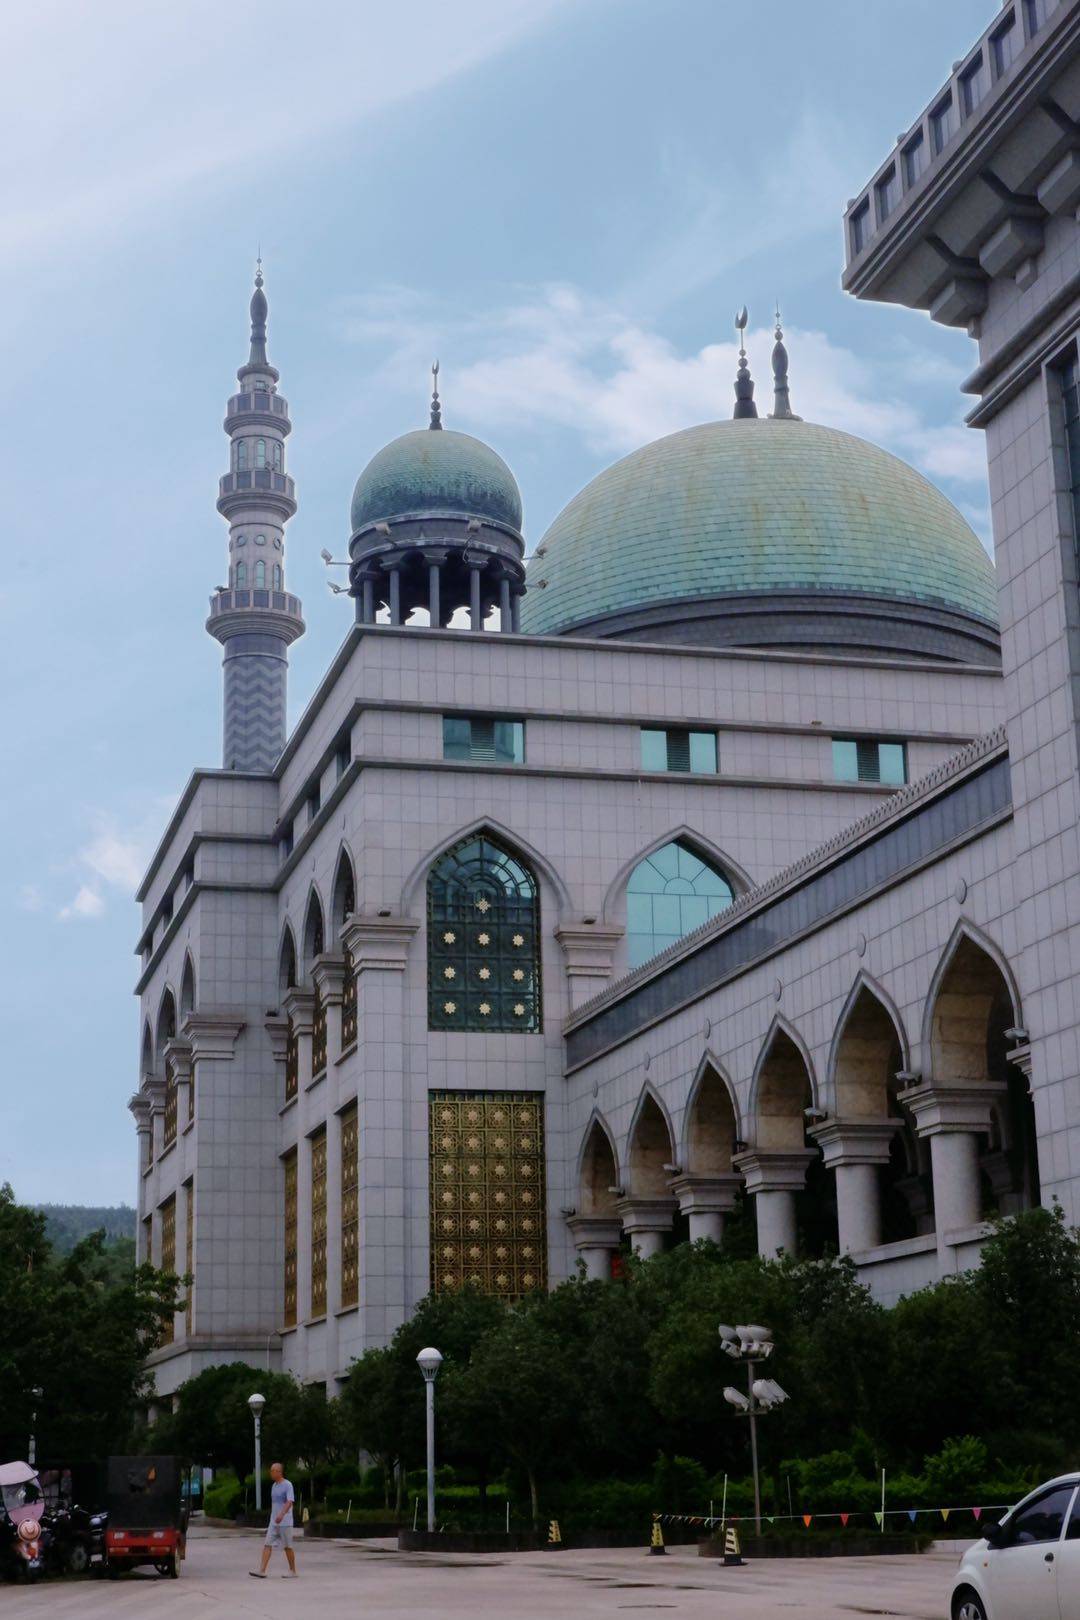 中国藏着一个小迪拜,有云南最大的清真寺,居民自筹1